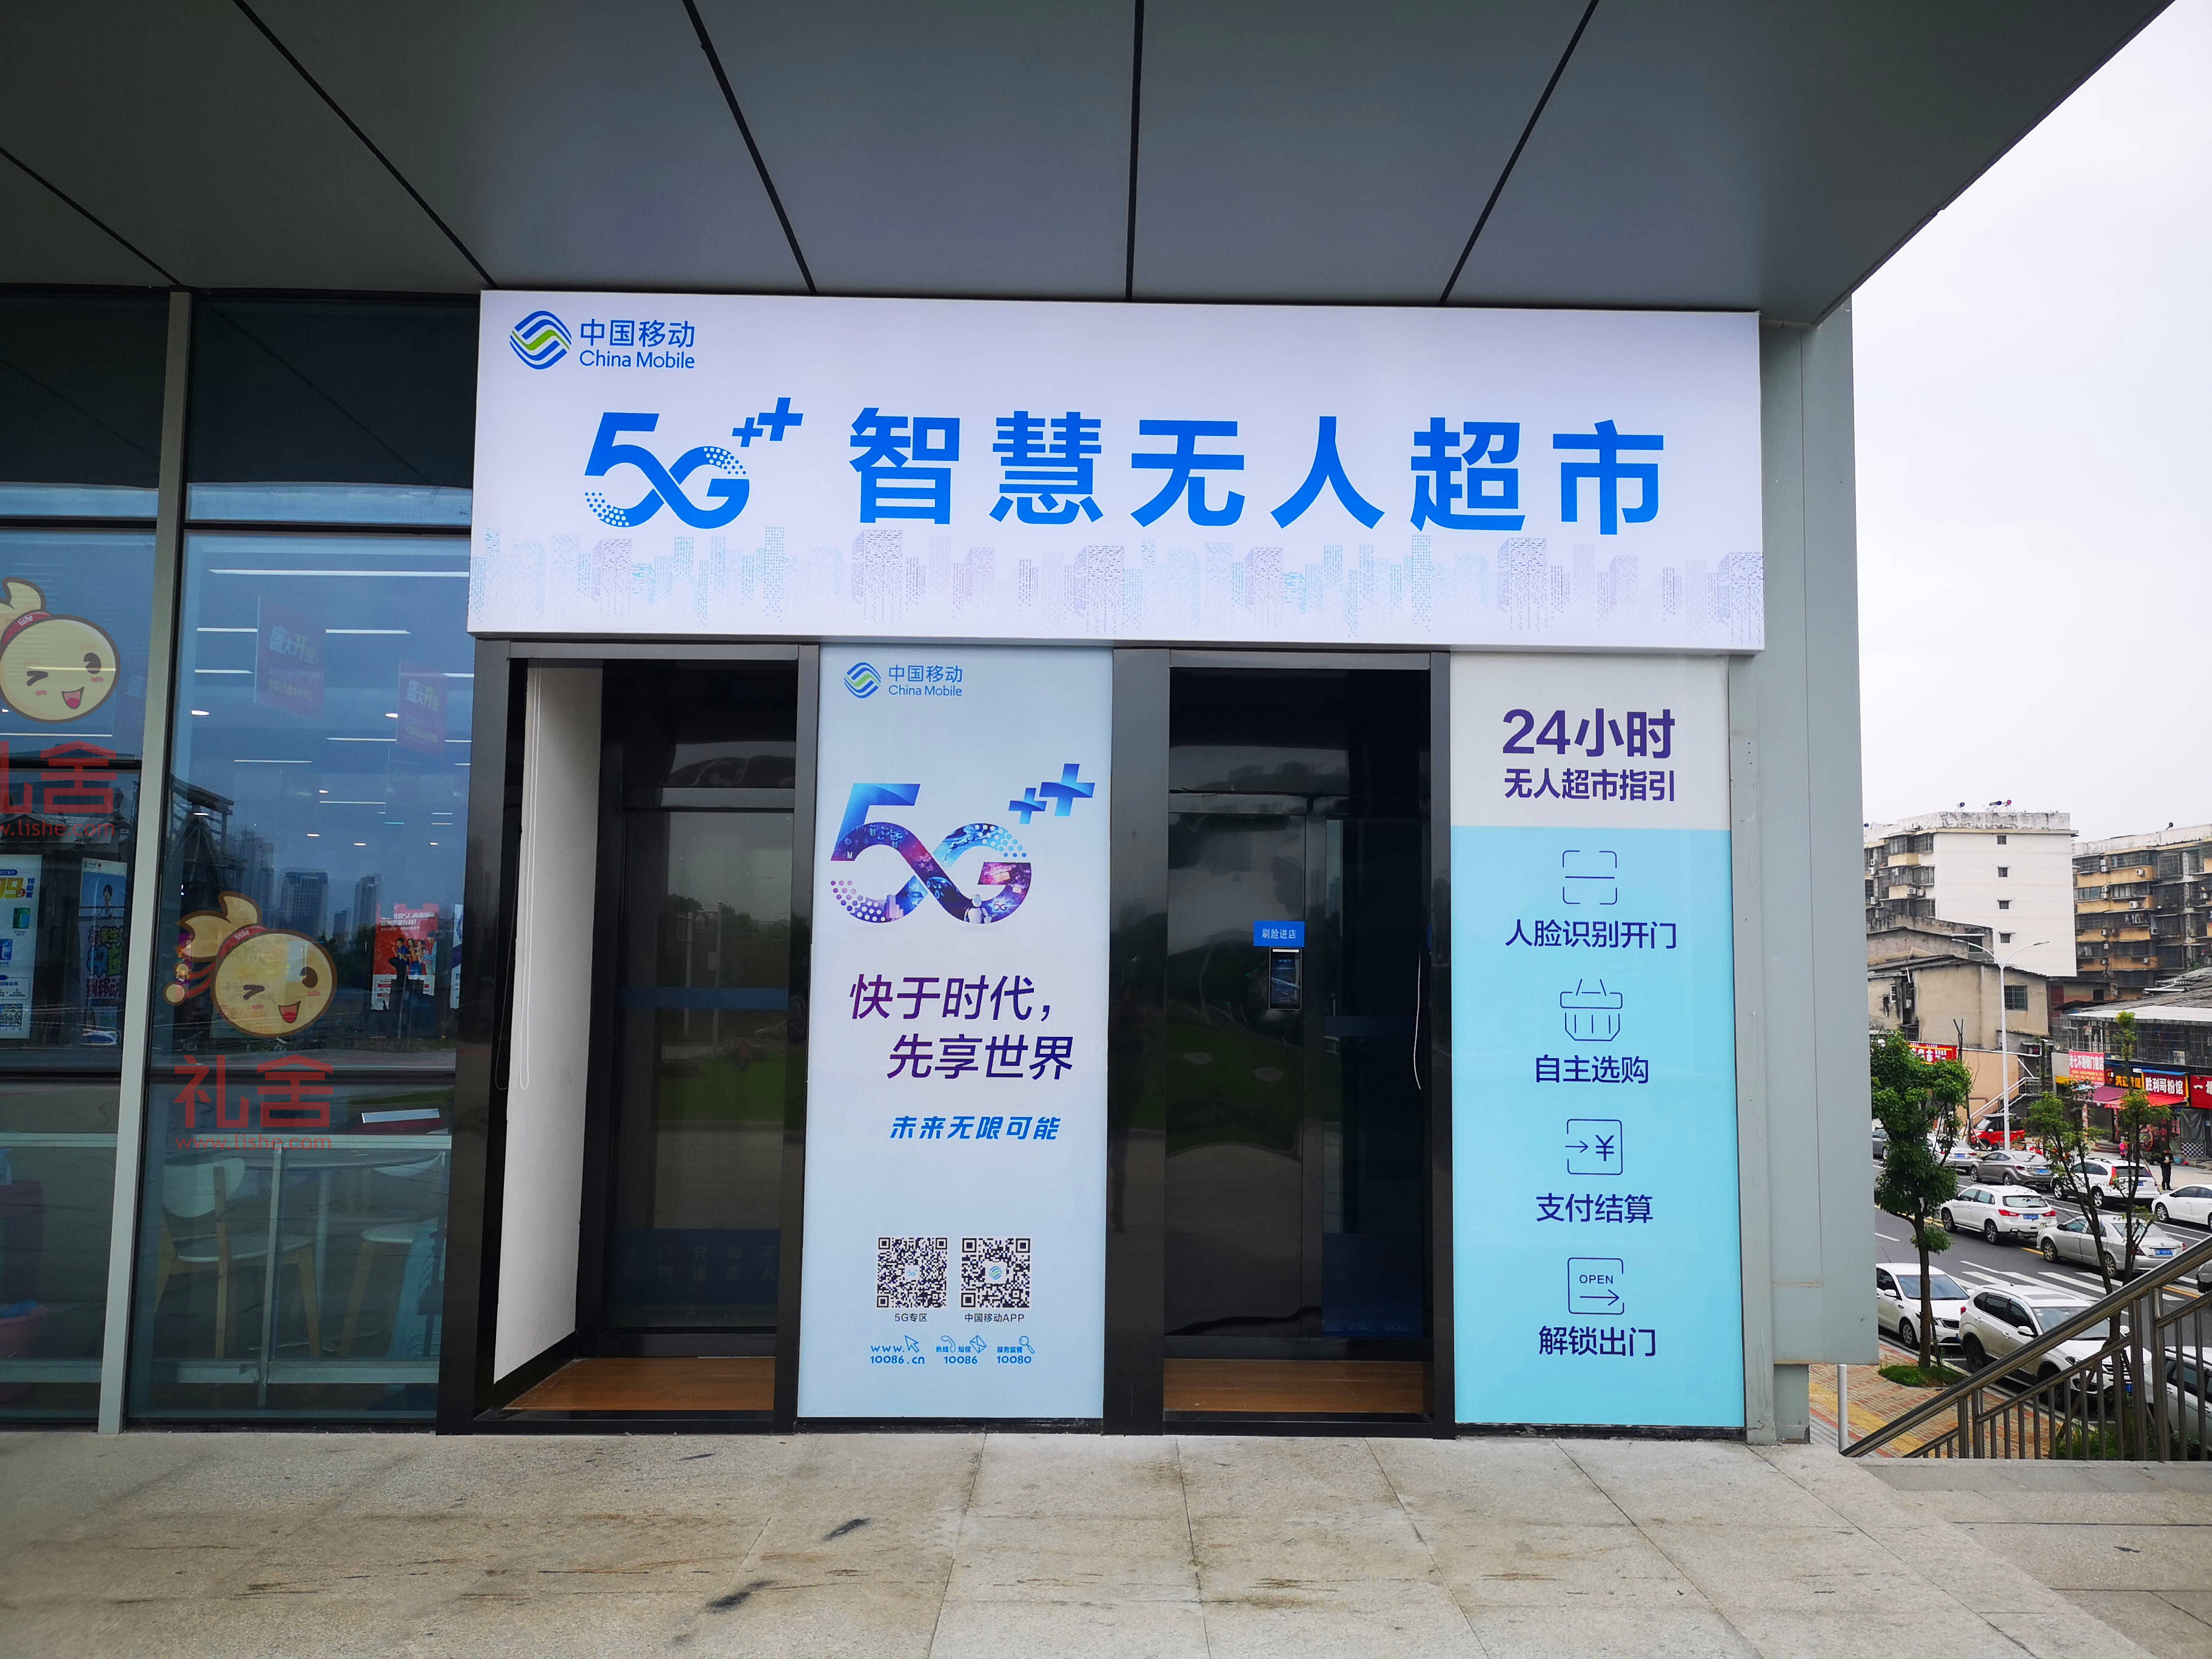 礼舍为中国移动打造5g智慧无人超市,推动无人超市迈入5g时代